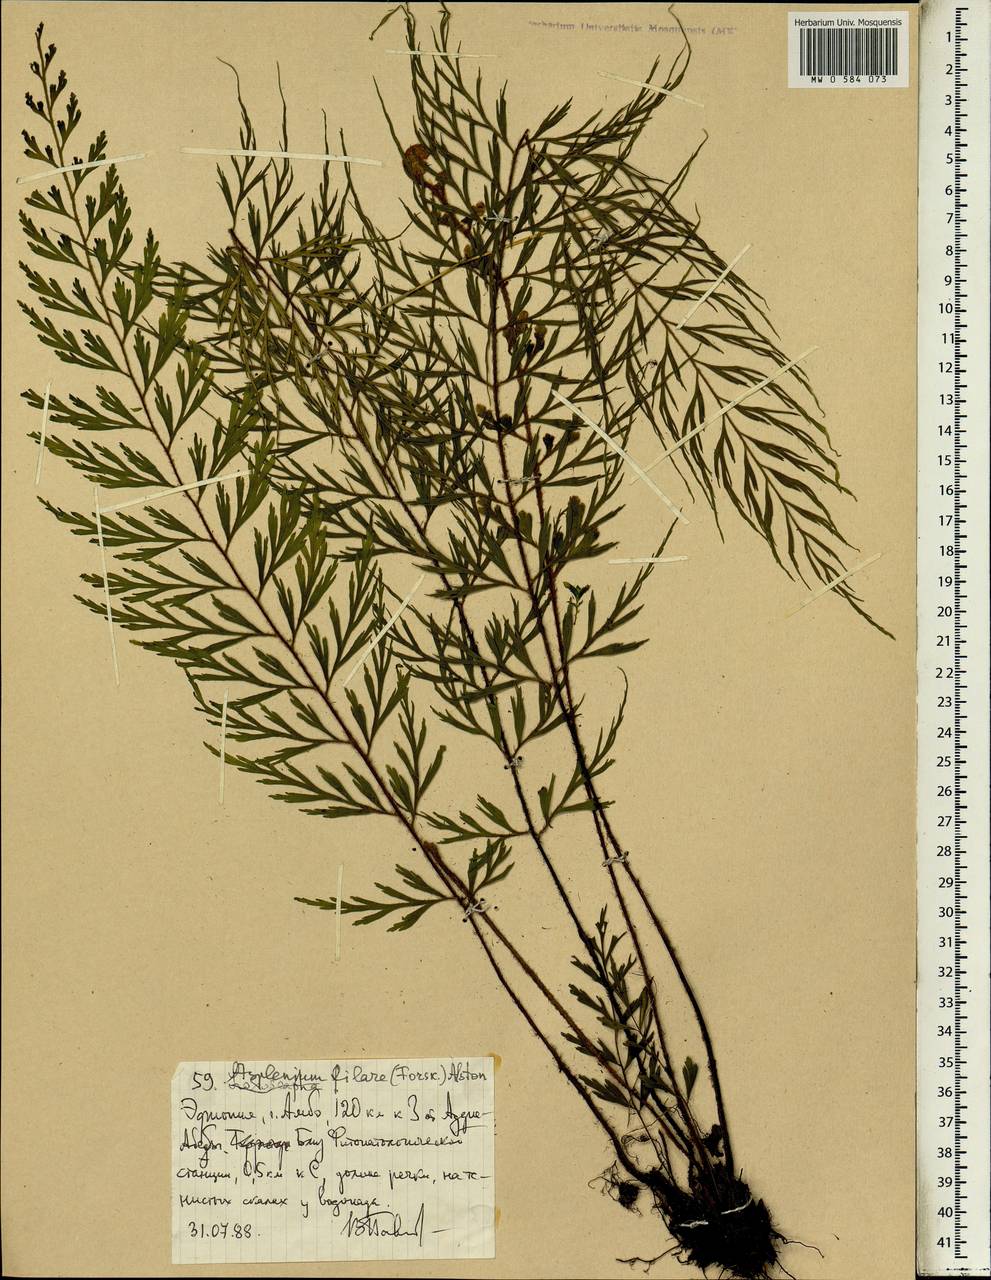 Asplenium aethiopicum subsp. filare (Forsk.) A.F.Braithw., Африка (AFR) (Эфиопия)